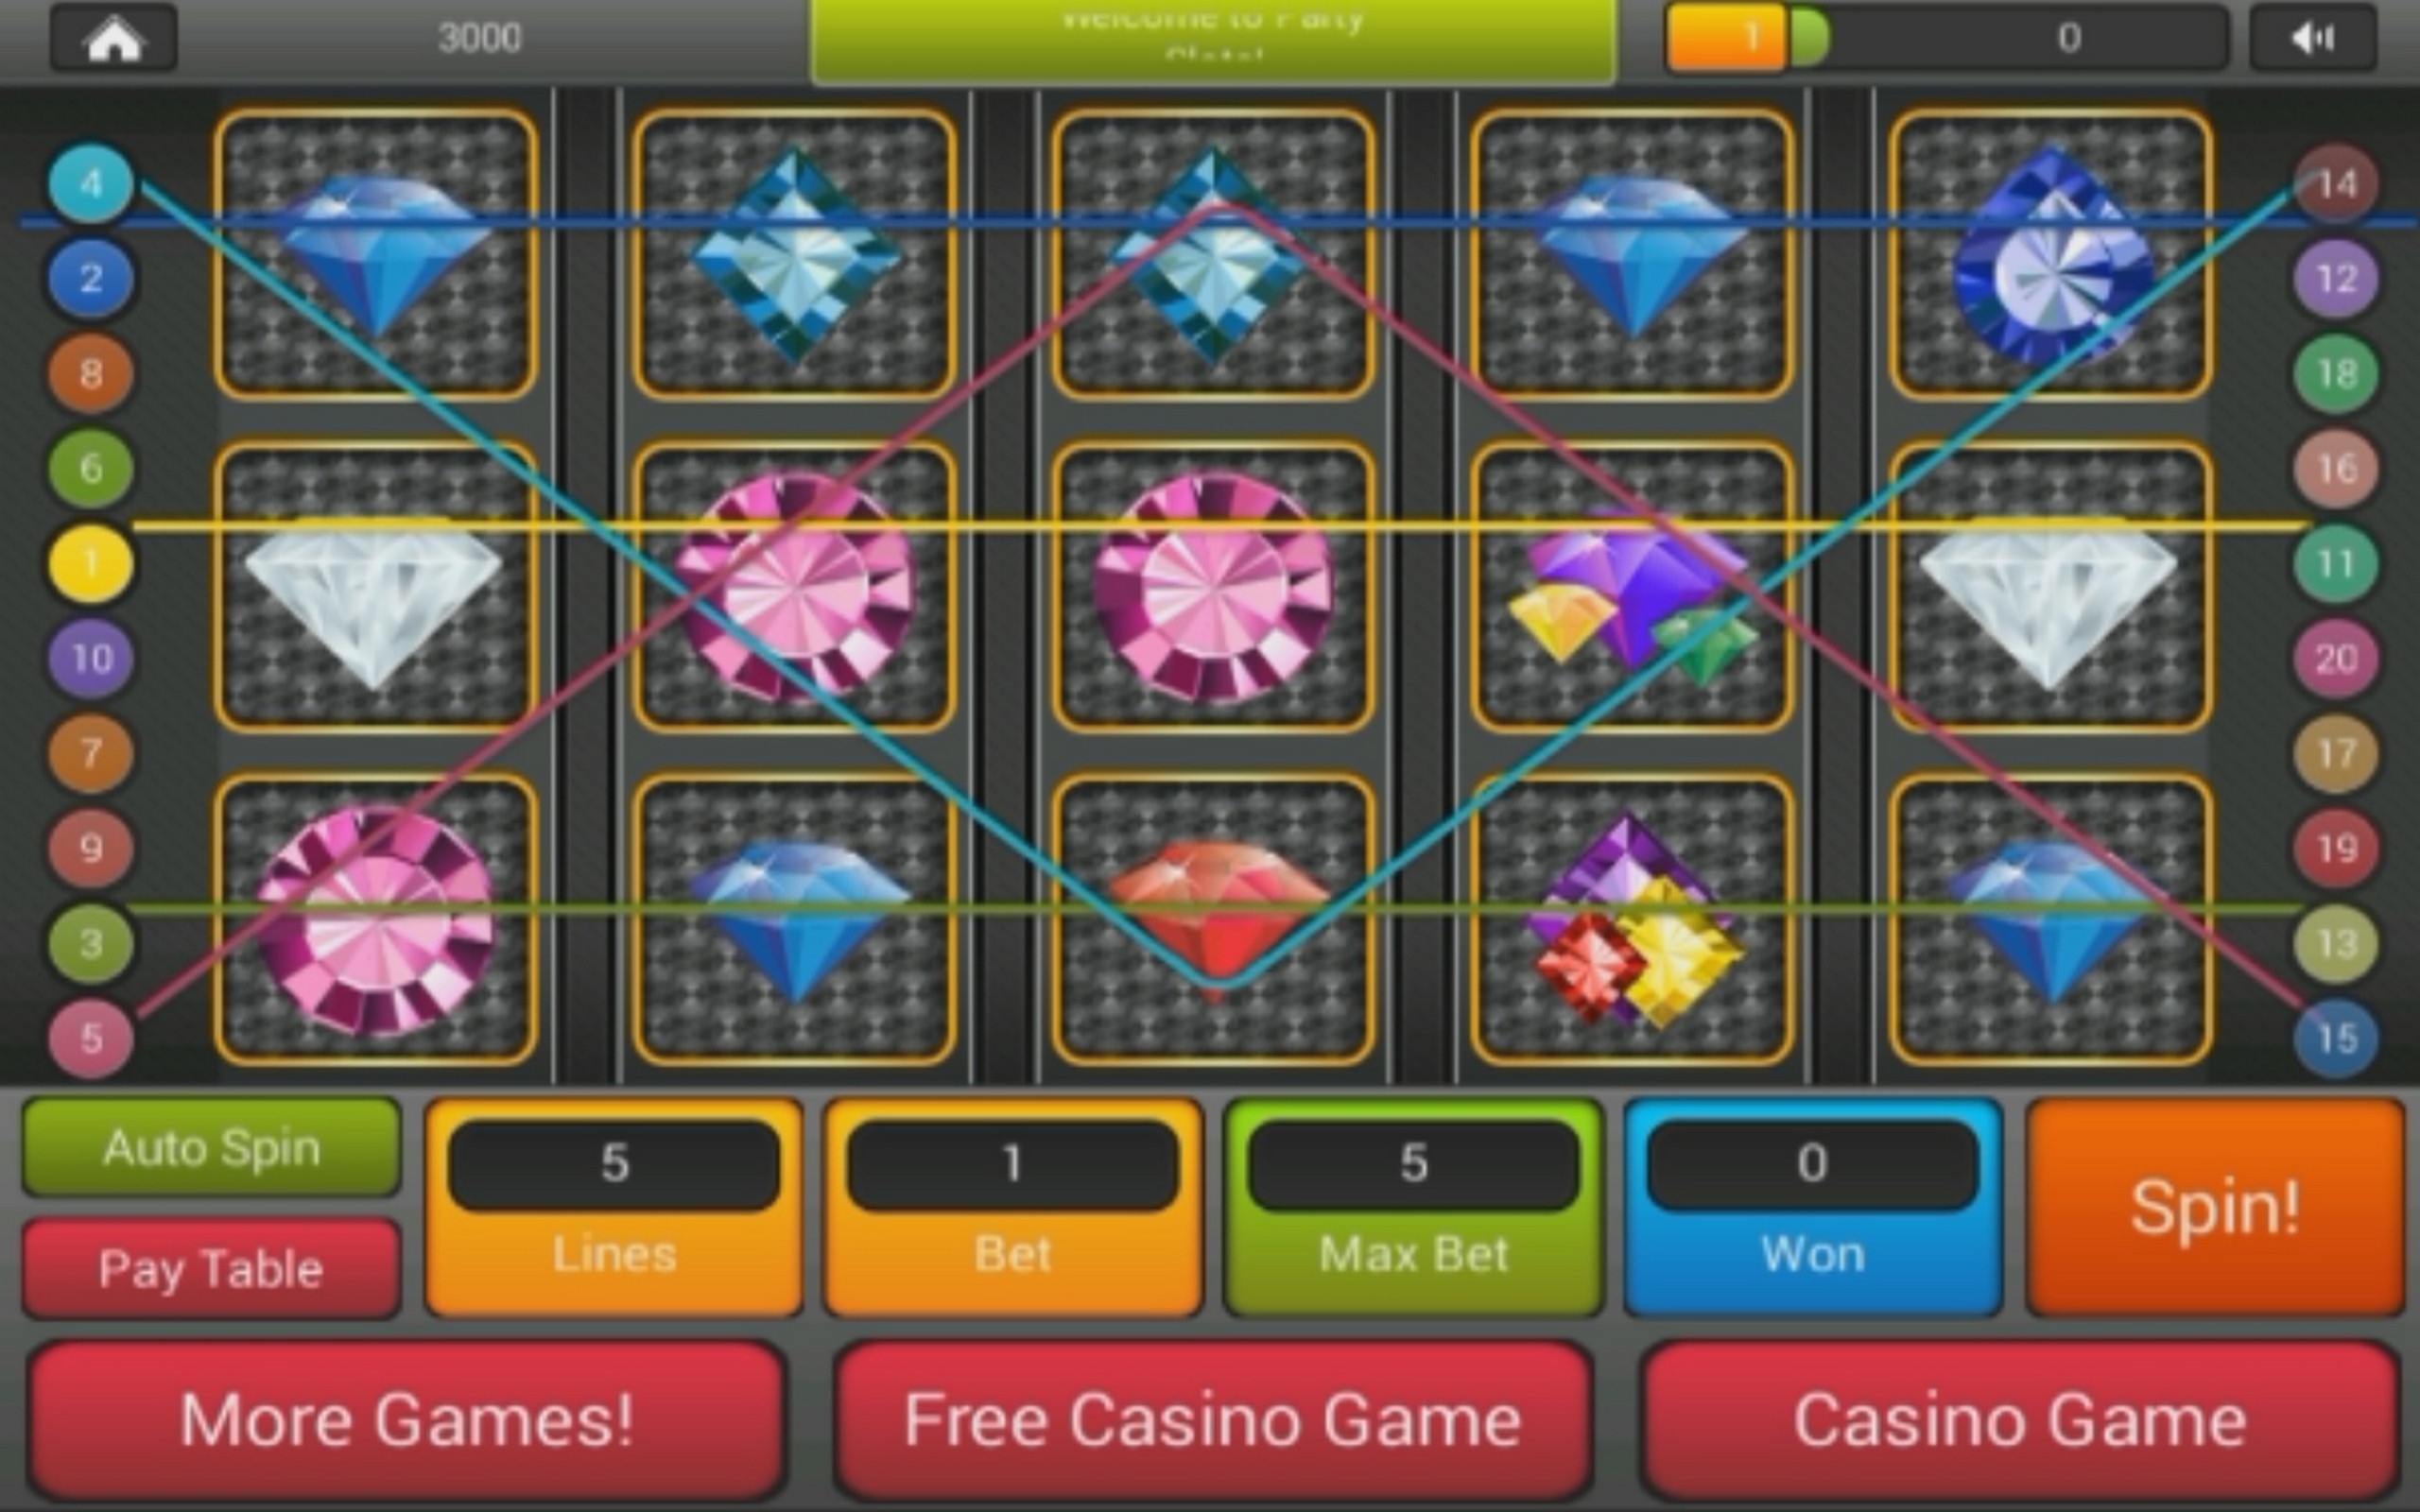 Casino gratis estrella juegos x 41153